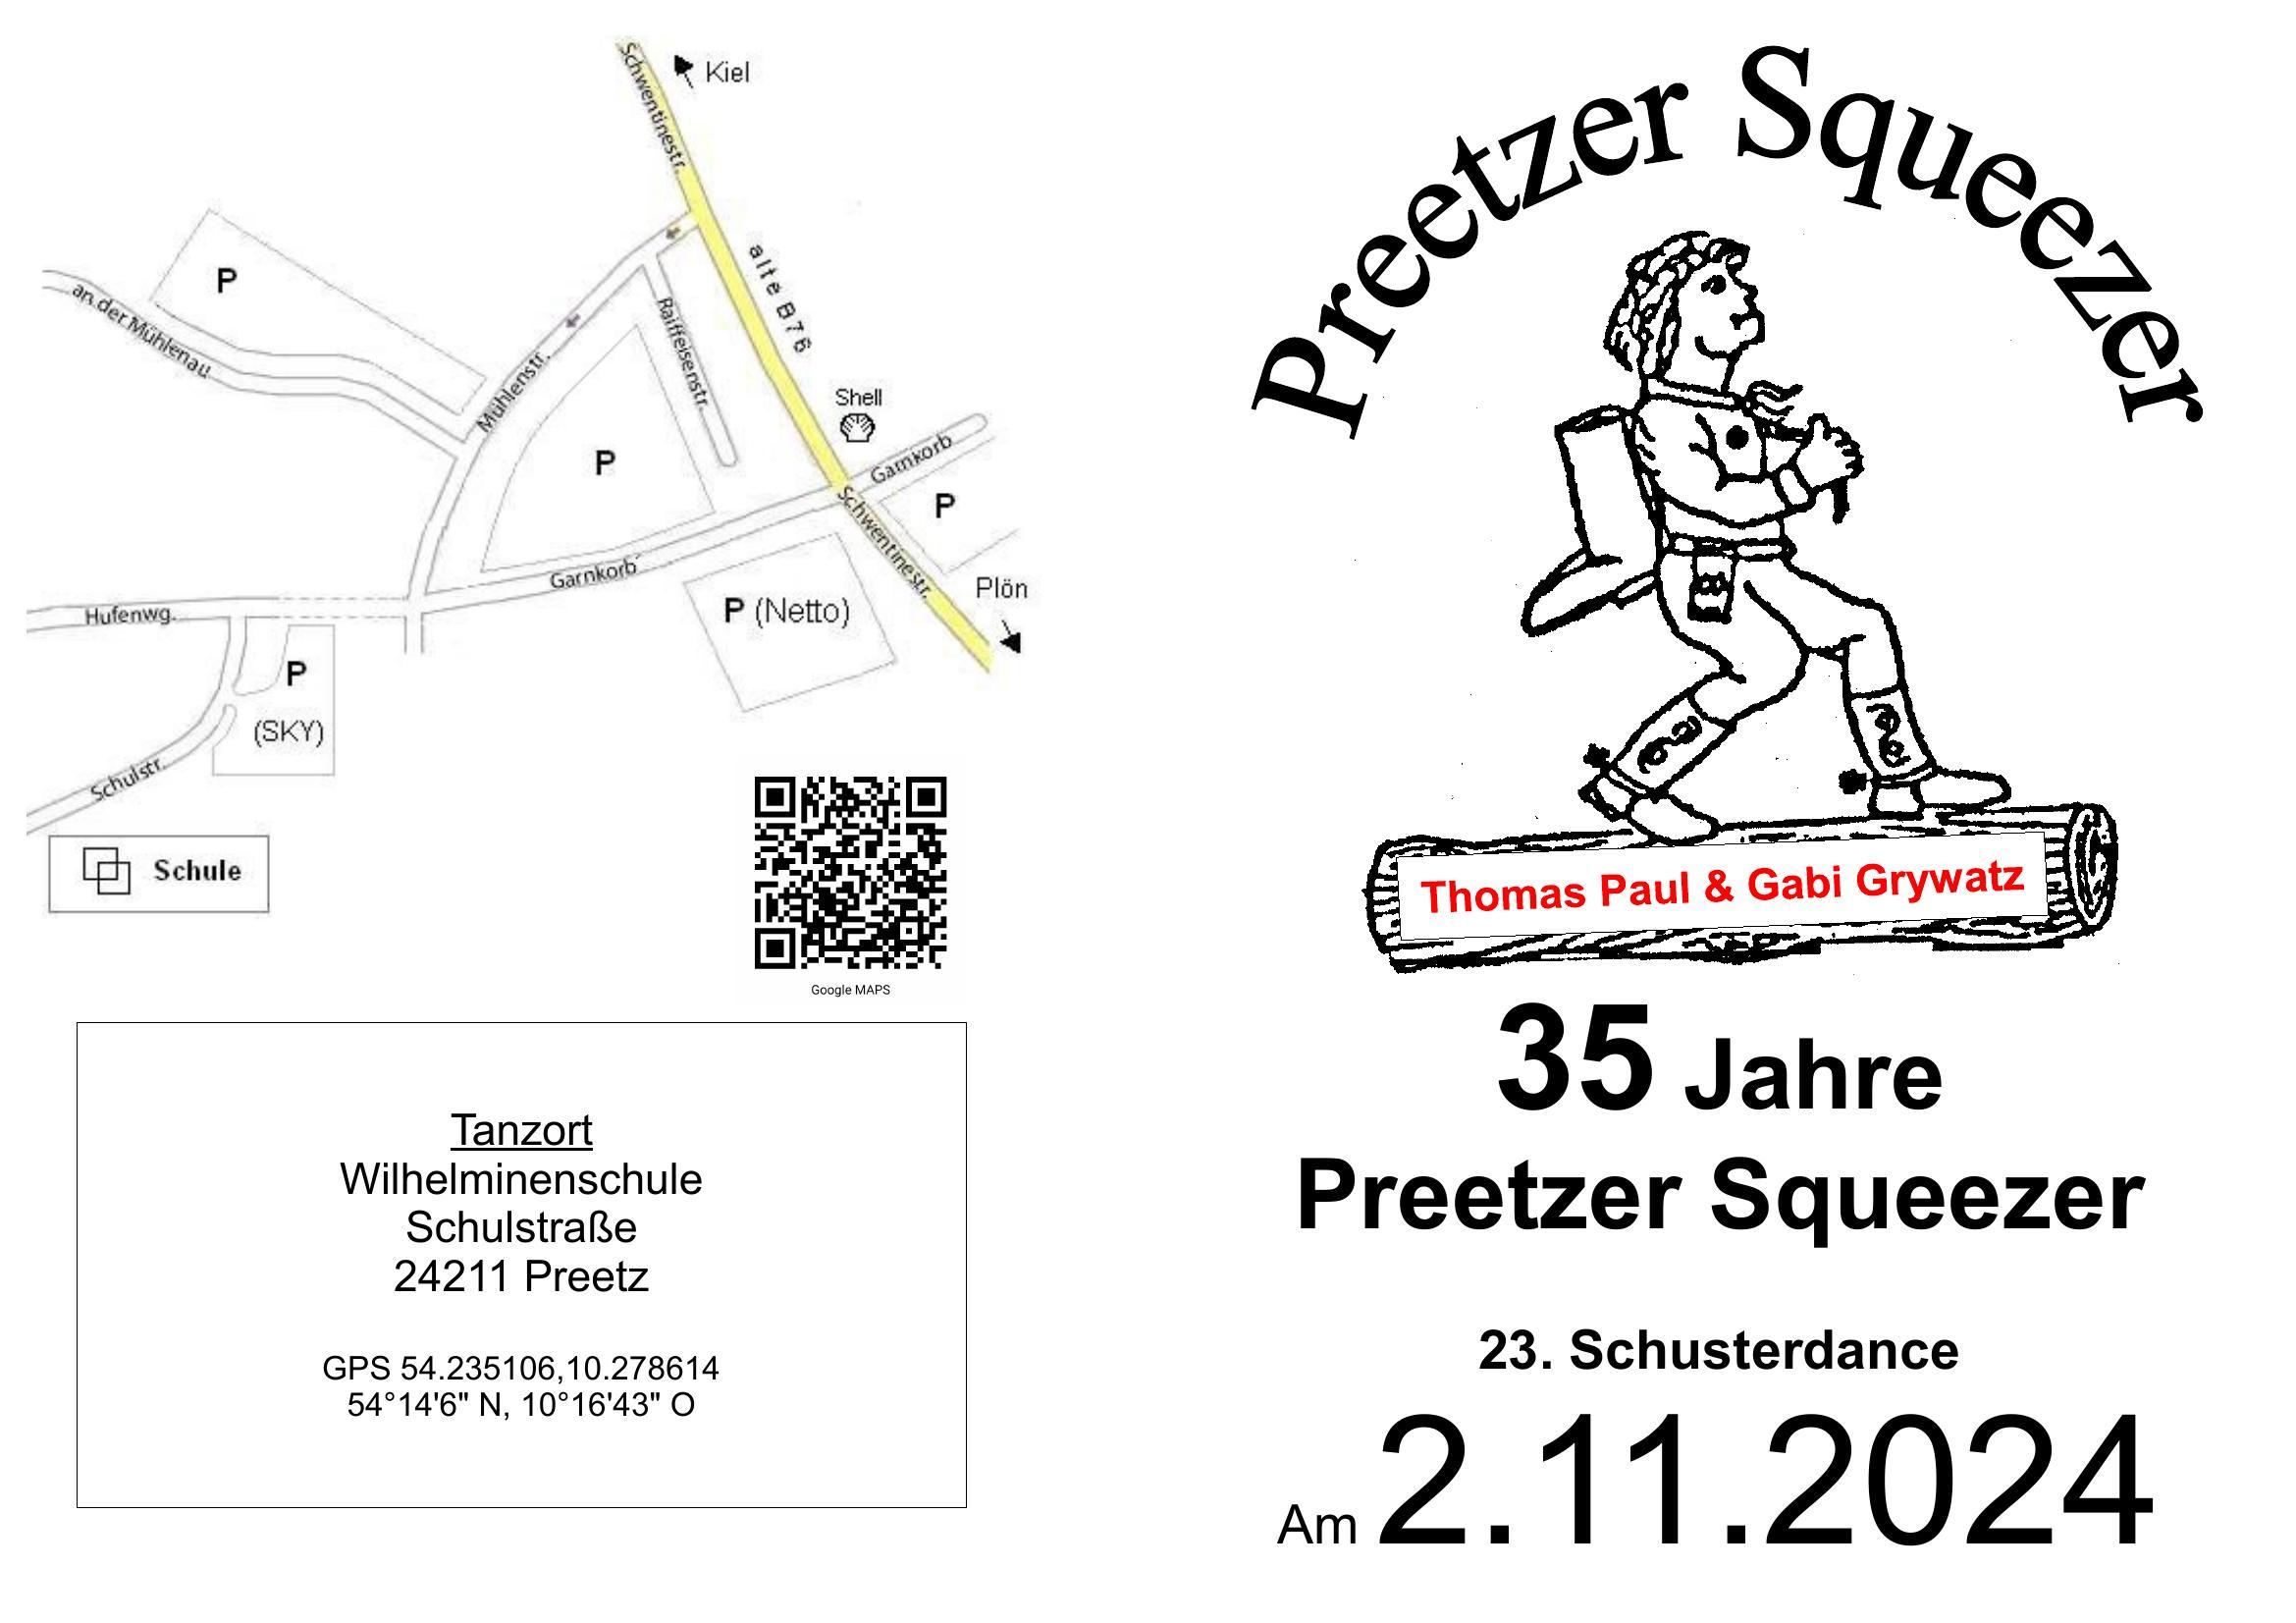 23. Schusterdance – 35 Jahre Preetzer Squeezer